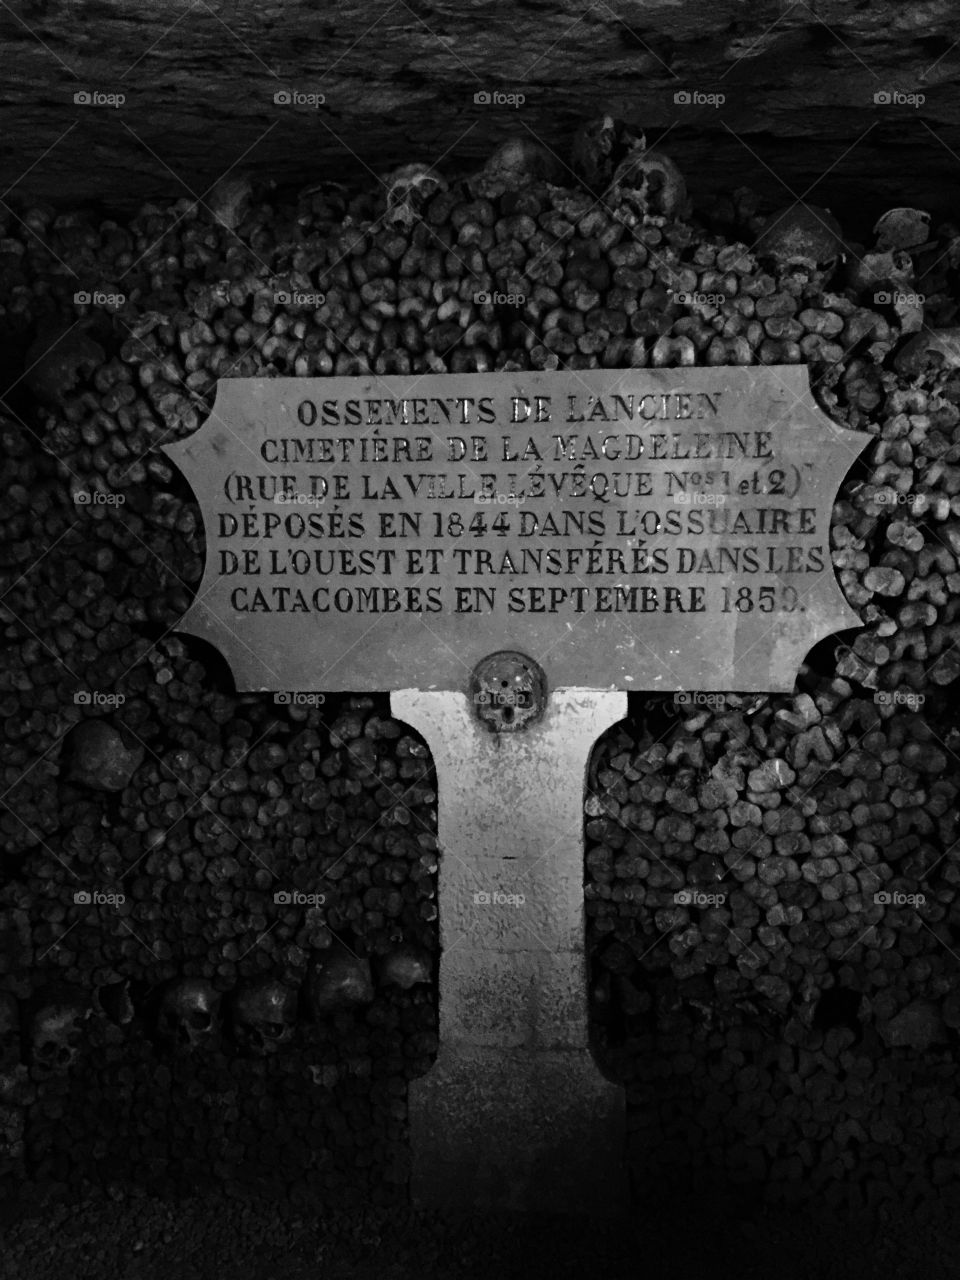 Paris catacombs 